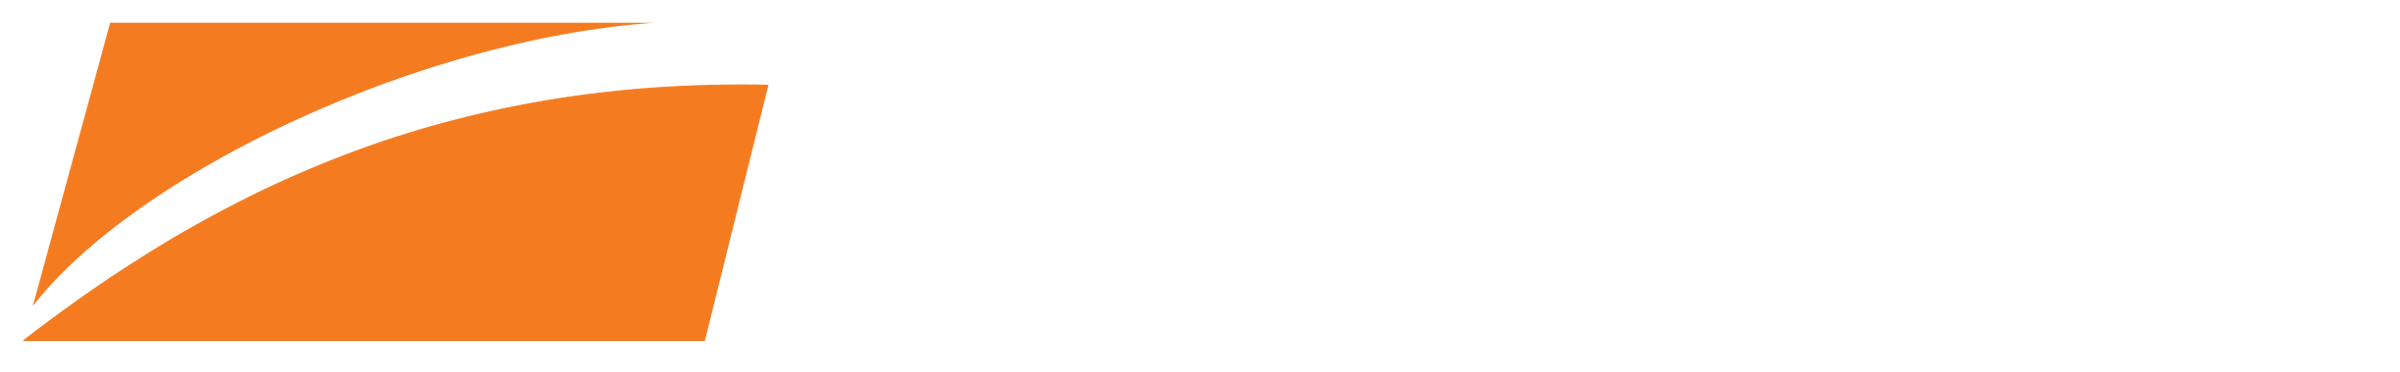 p-s-c logo